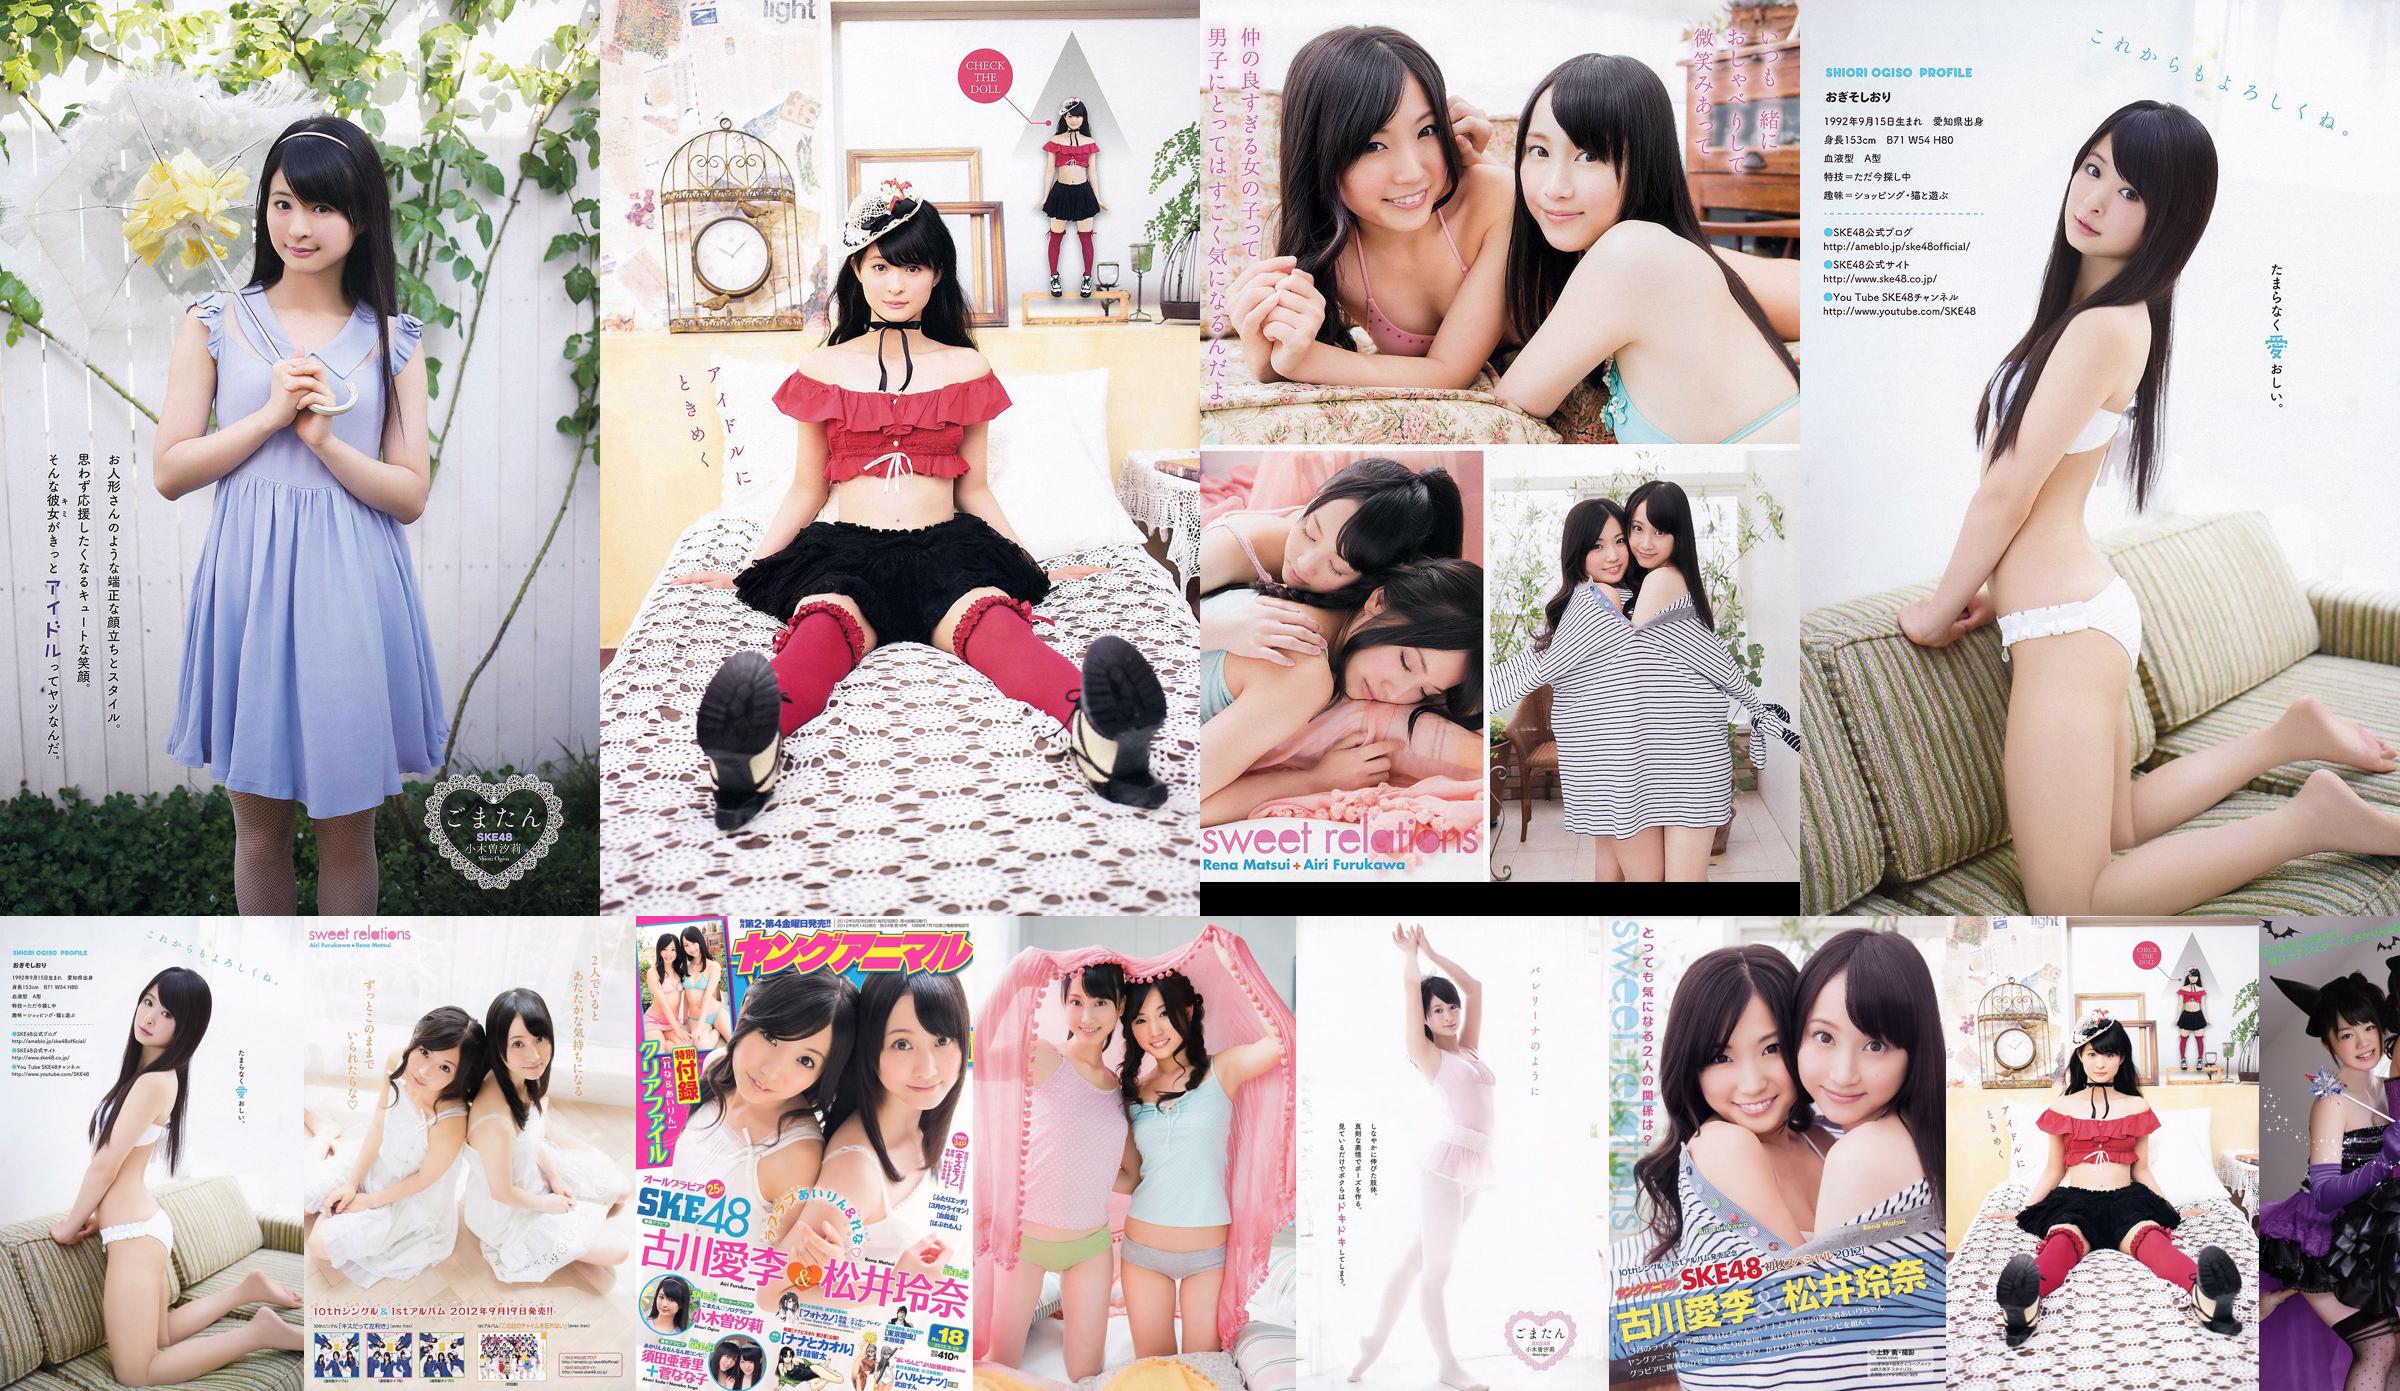 Ai Li Furukawa, Rena Matsui, Sasa Ogi, Aikari Suda [Young Animal] 2012 nr 18 Photo Magazine No.ede594 Strona 1